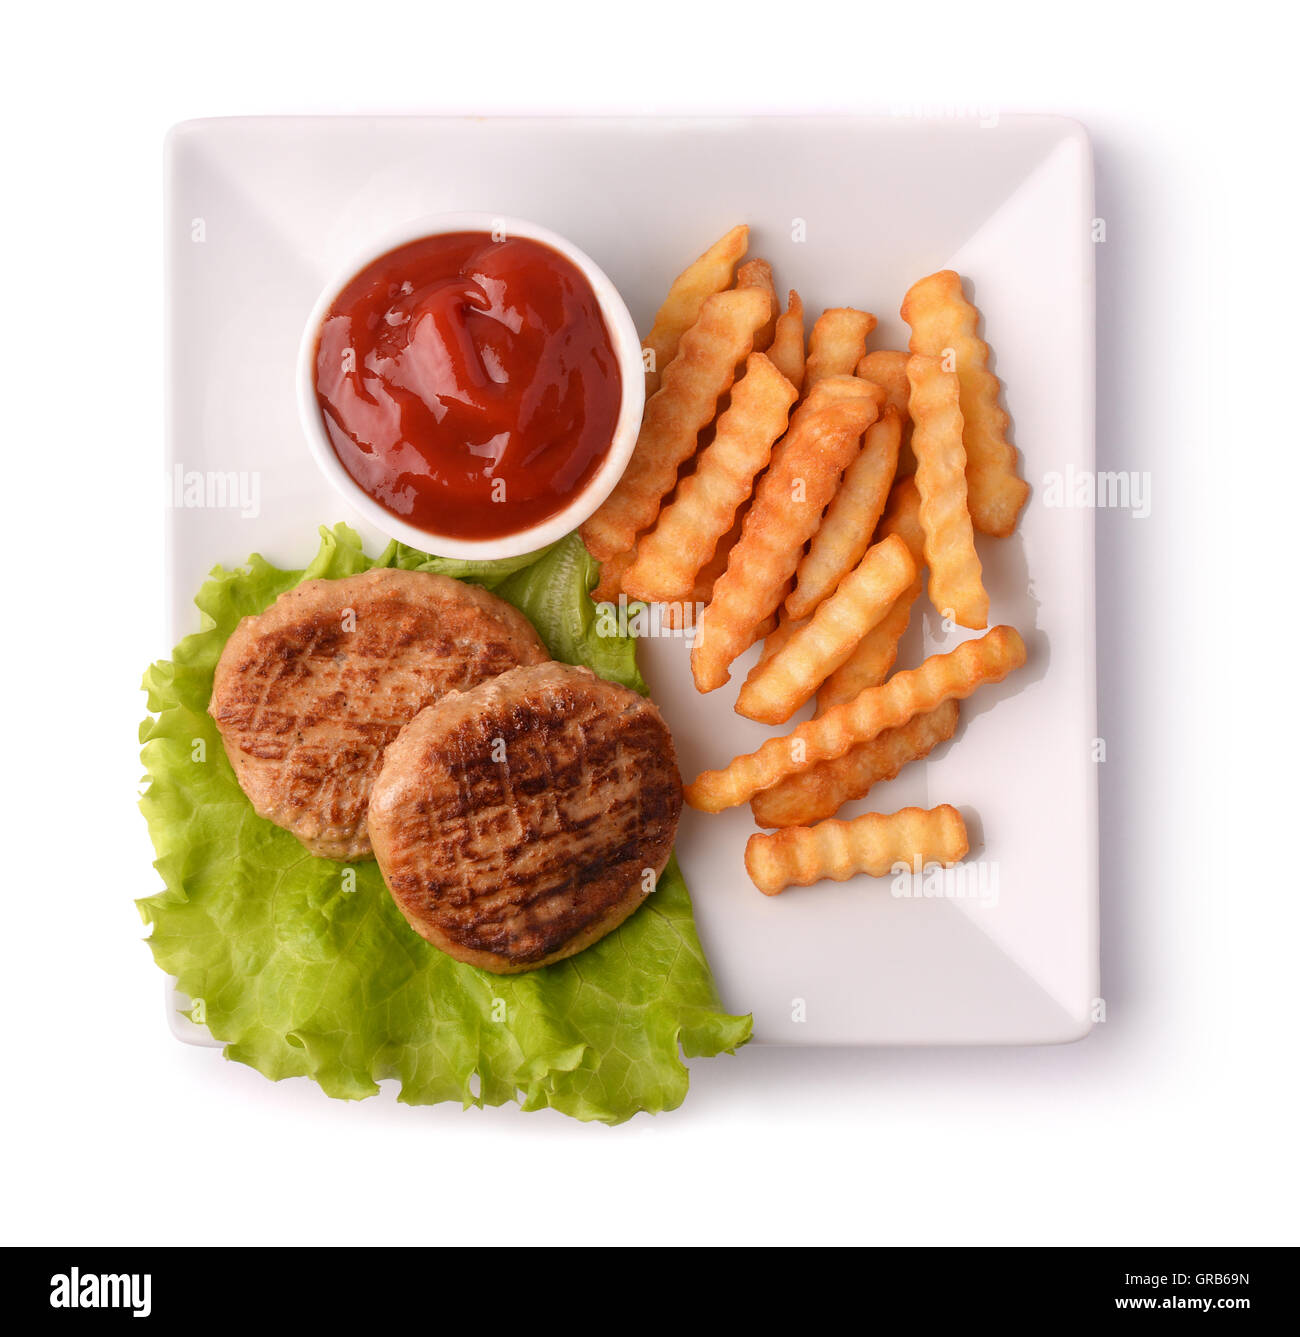 Vista superiore della piastra con hamburger, patatine fritte e ketchup isolato su bianco Foto Stock